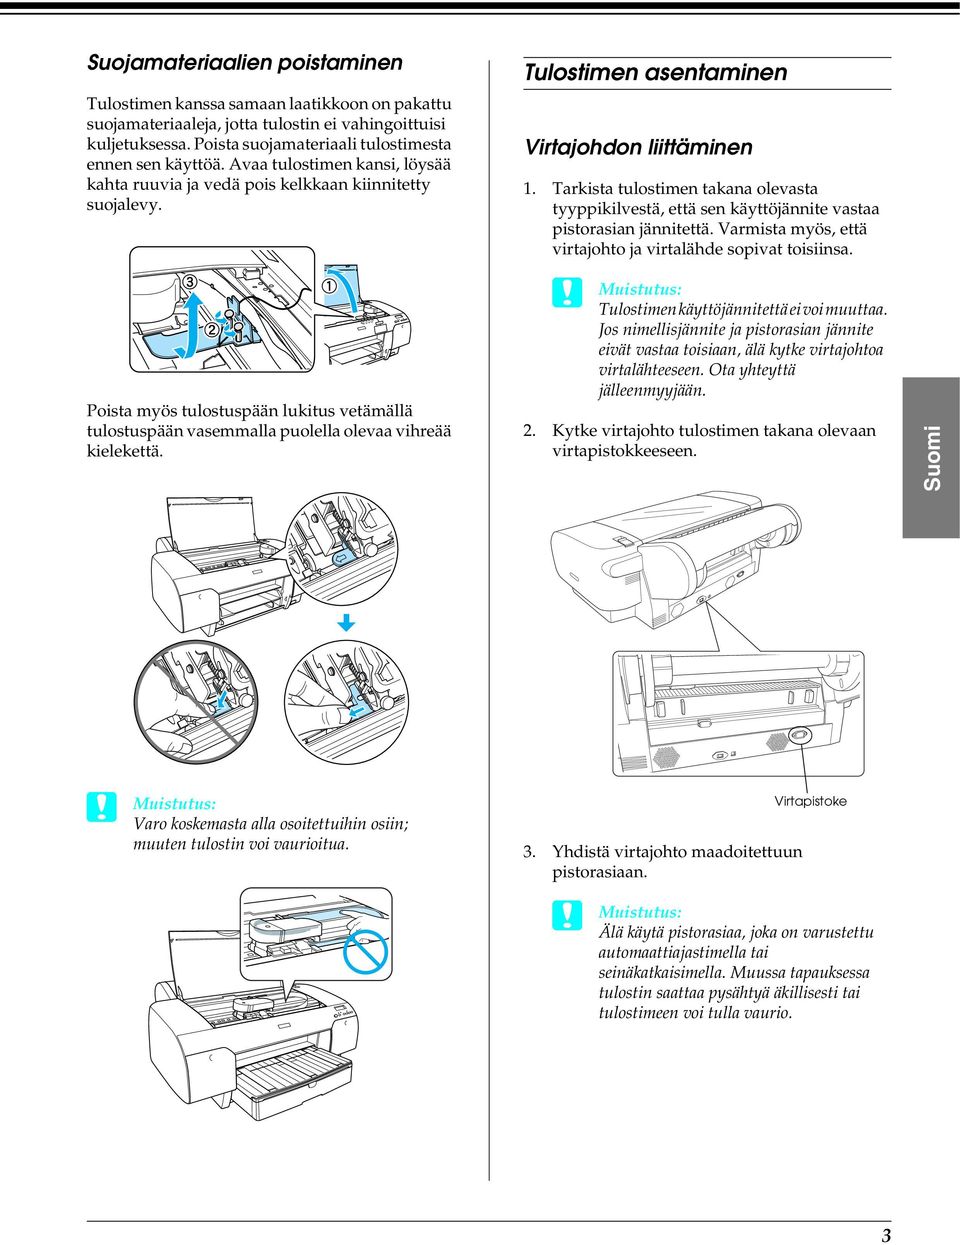 Tulostimen asentaminen Virtajohdon liittäminen 1. Tarkista tulostimen takana olevasta tyyppikilvestä, että sen käyttöjännite vastaa pistorasian jännitettä.